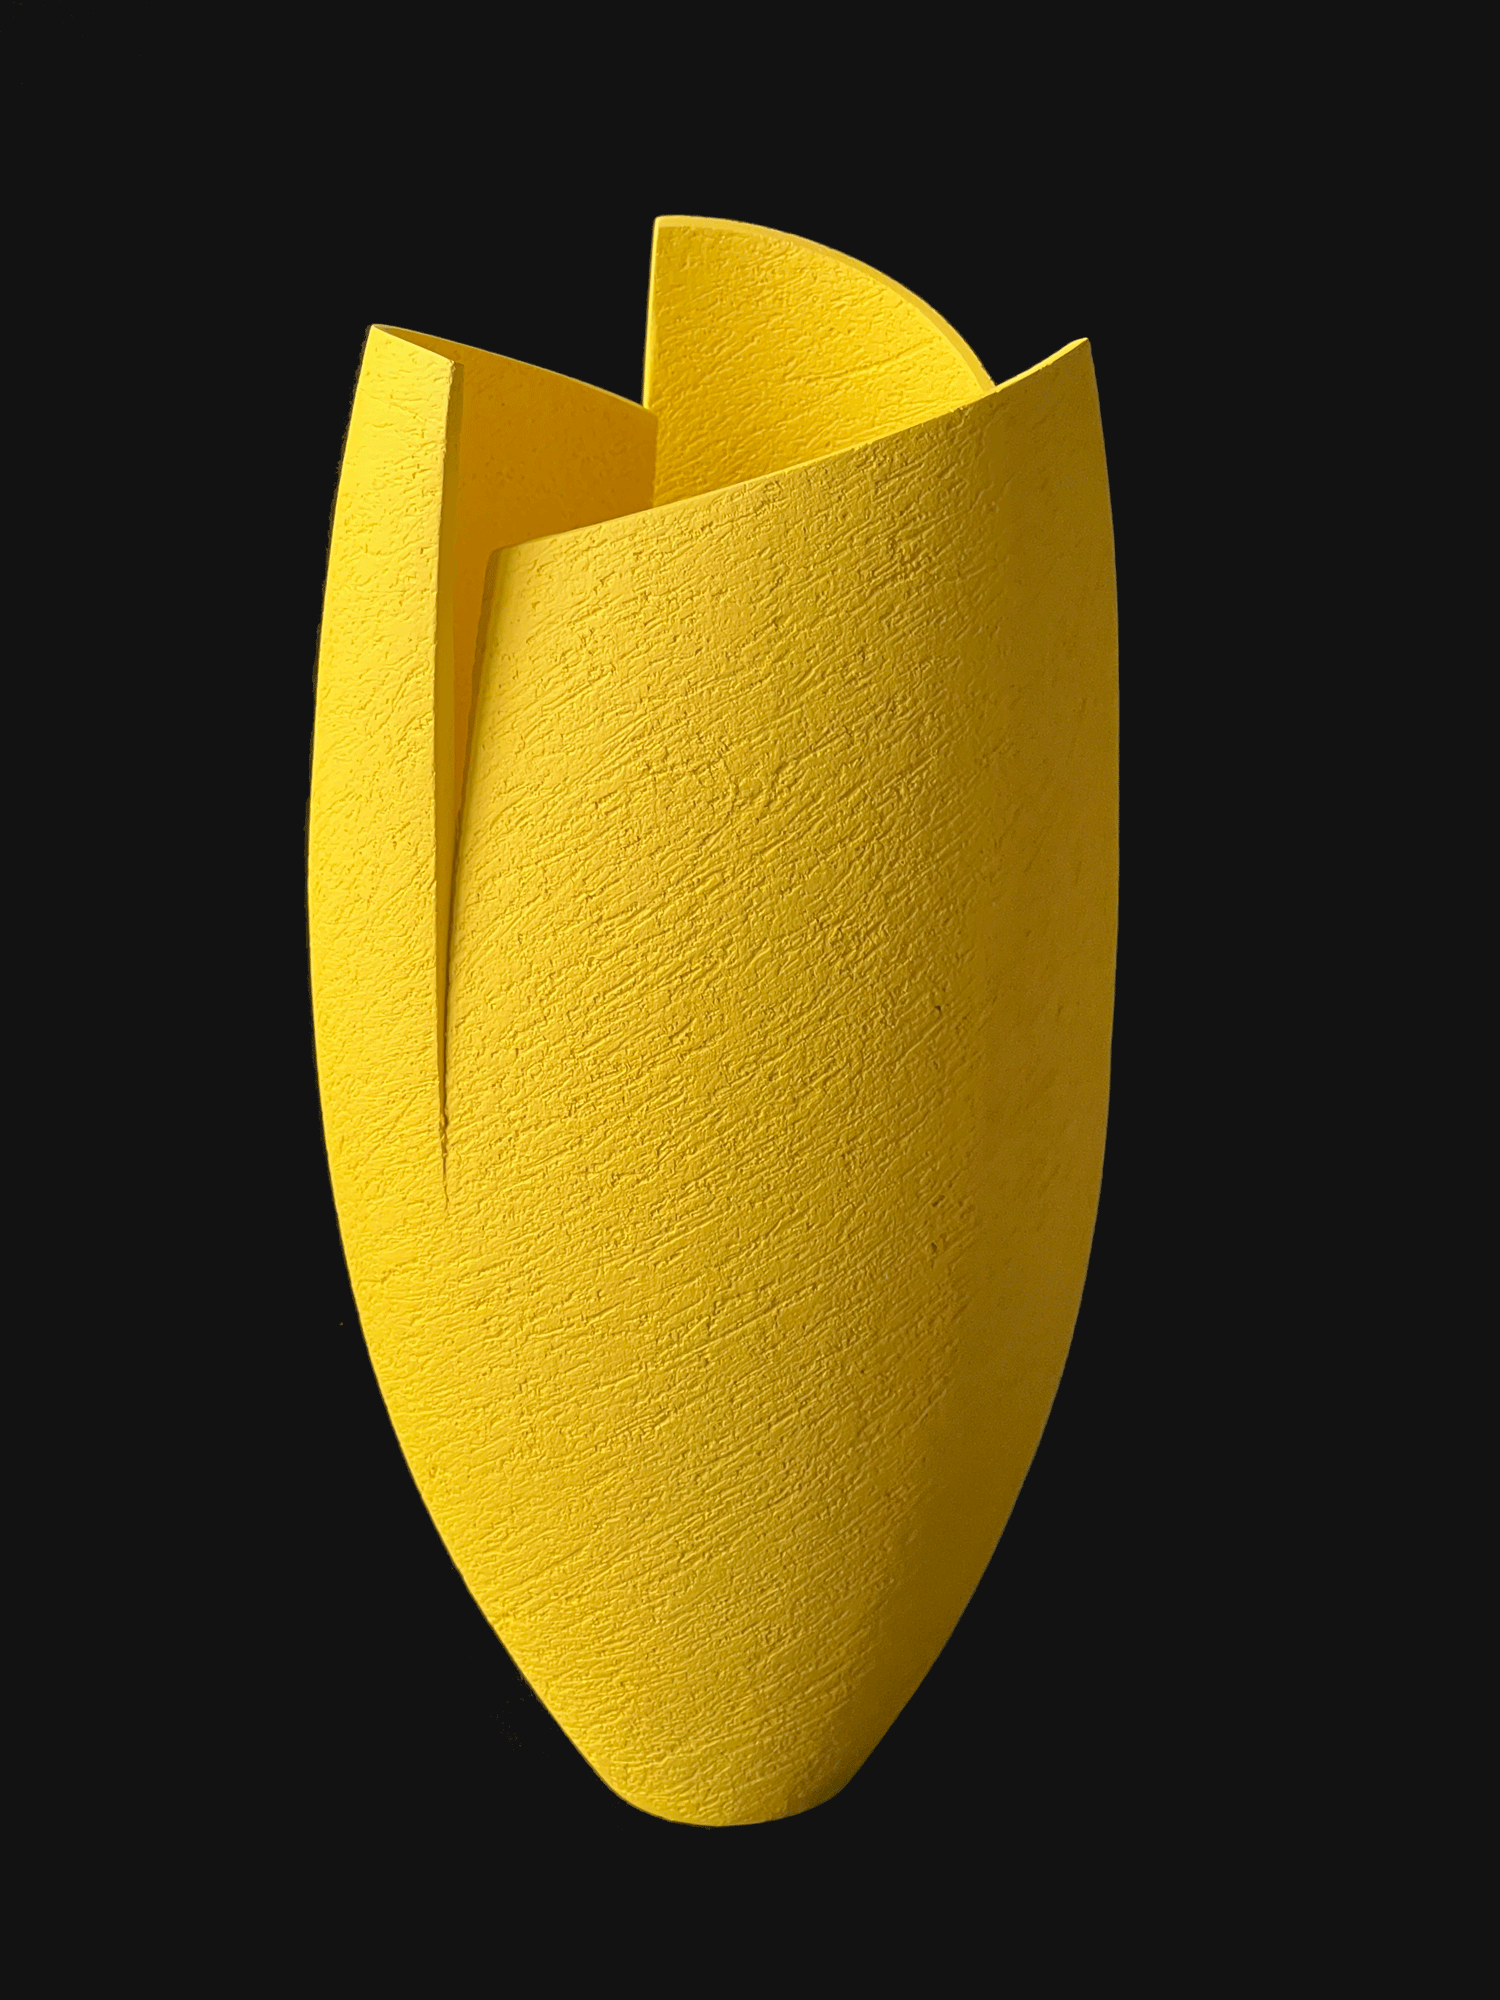 Ashraf Hanna – Yellow Cut & Altered Vessel